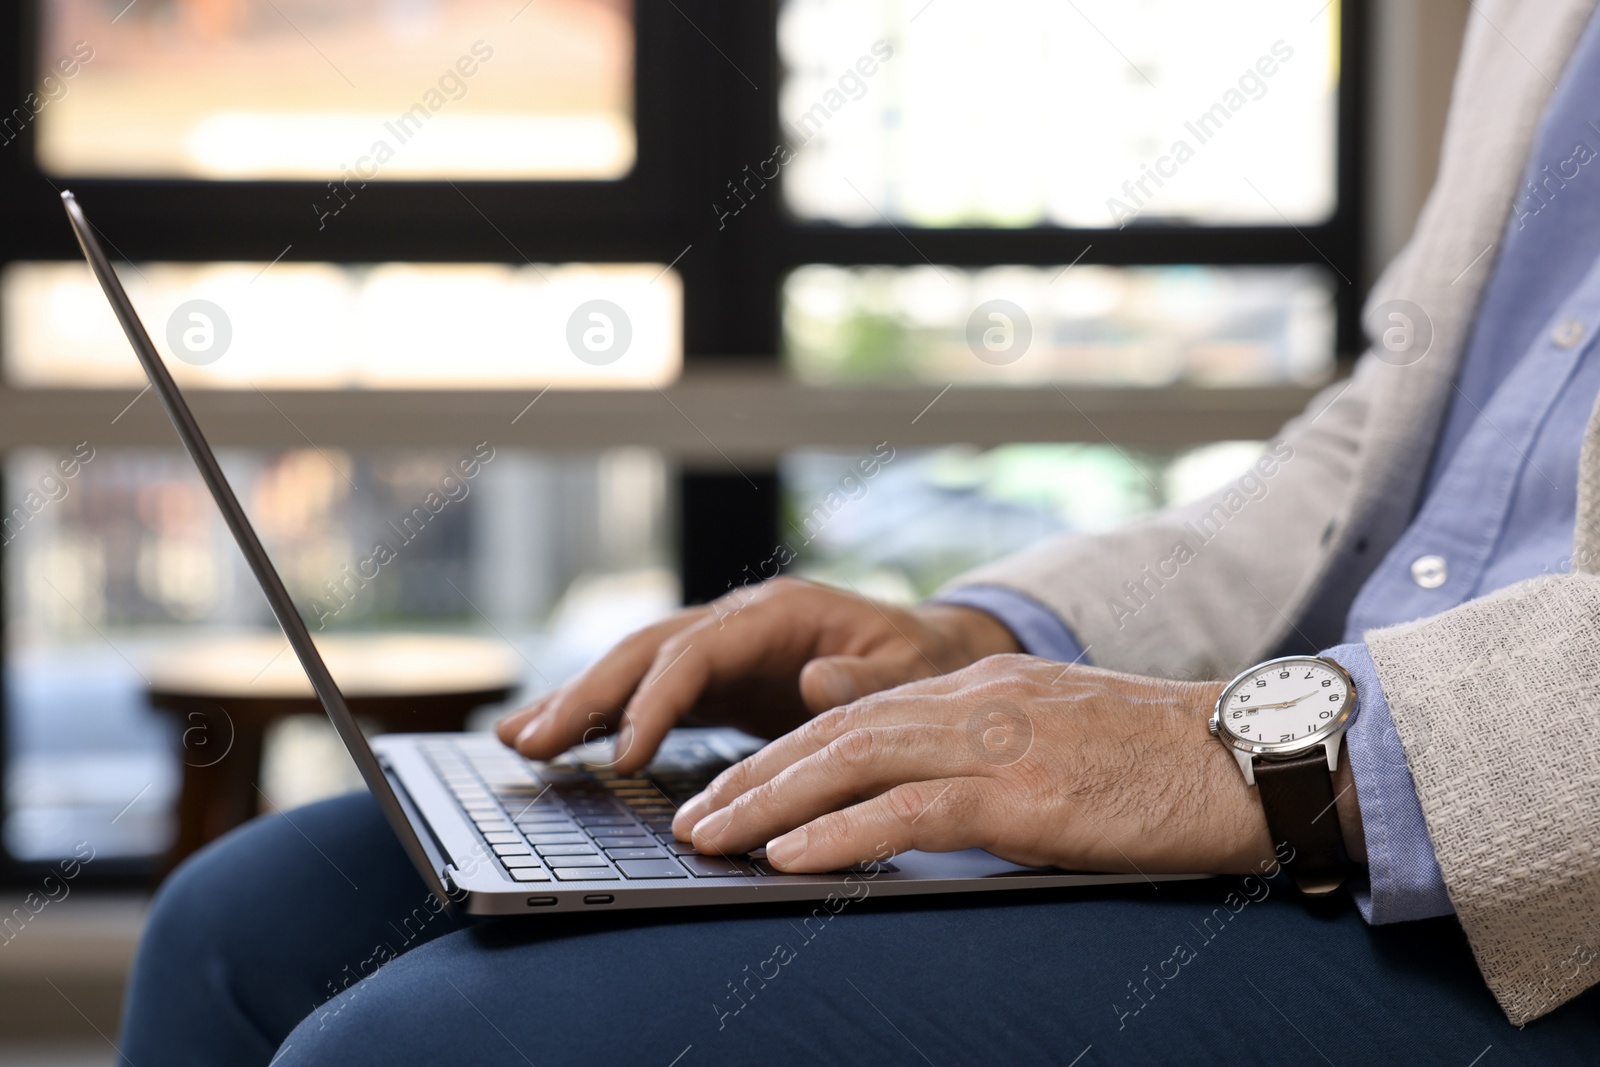 Photo of Man using modern laptop in cafe, closeup